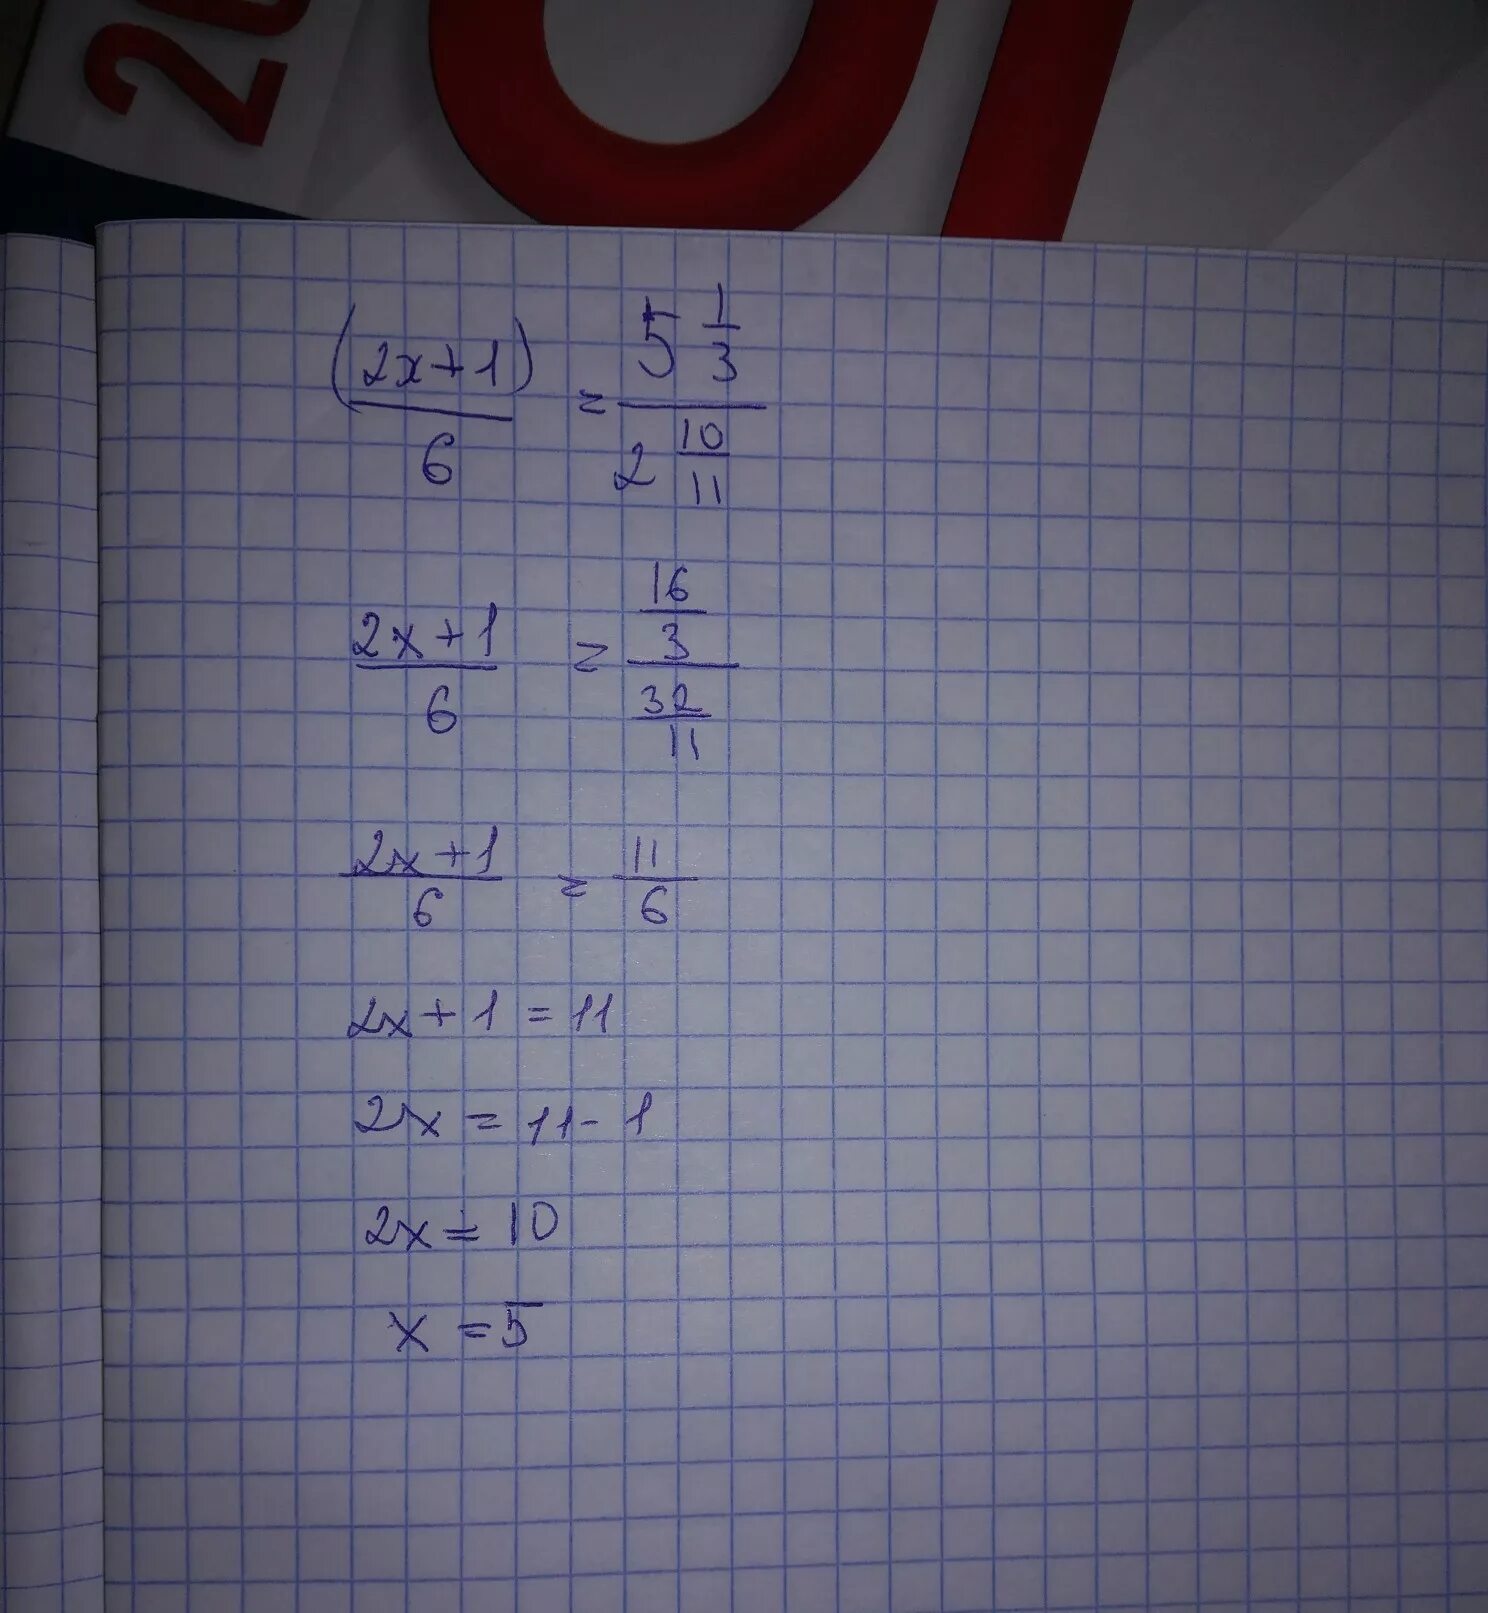 6x 10 8 0. 0,5:6=1 1/6:Х. (Х-1):2-(У-1):6=5/3. Х-5,1=6,2. Решить 1,2*5,5.